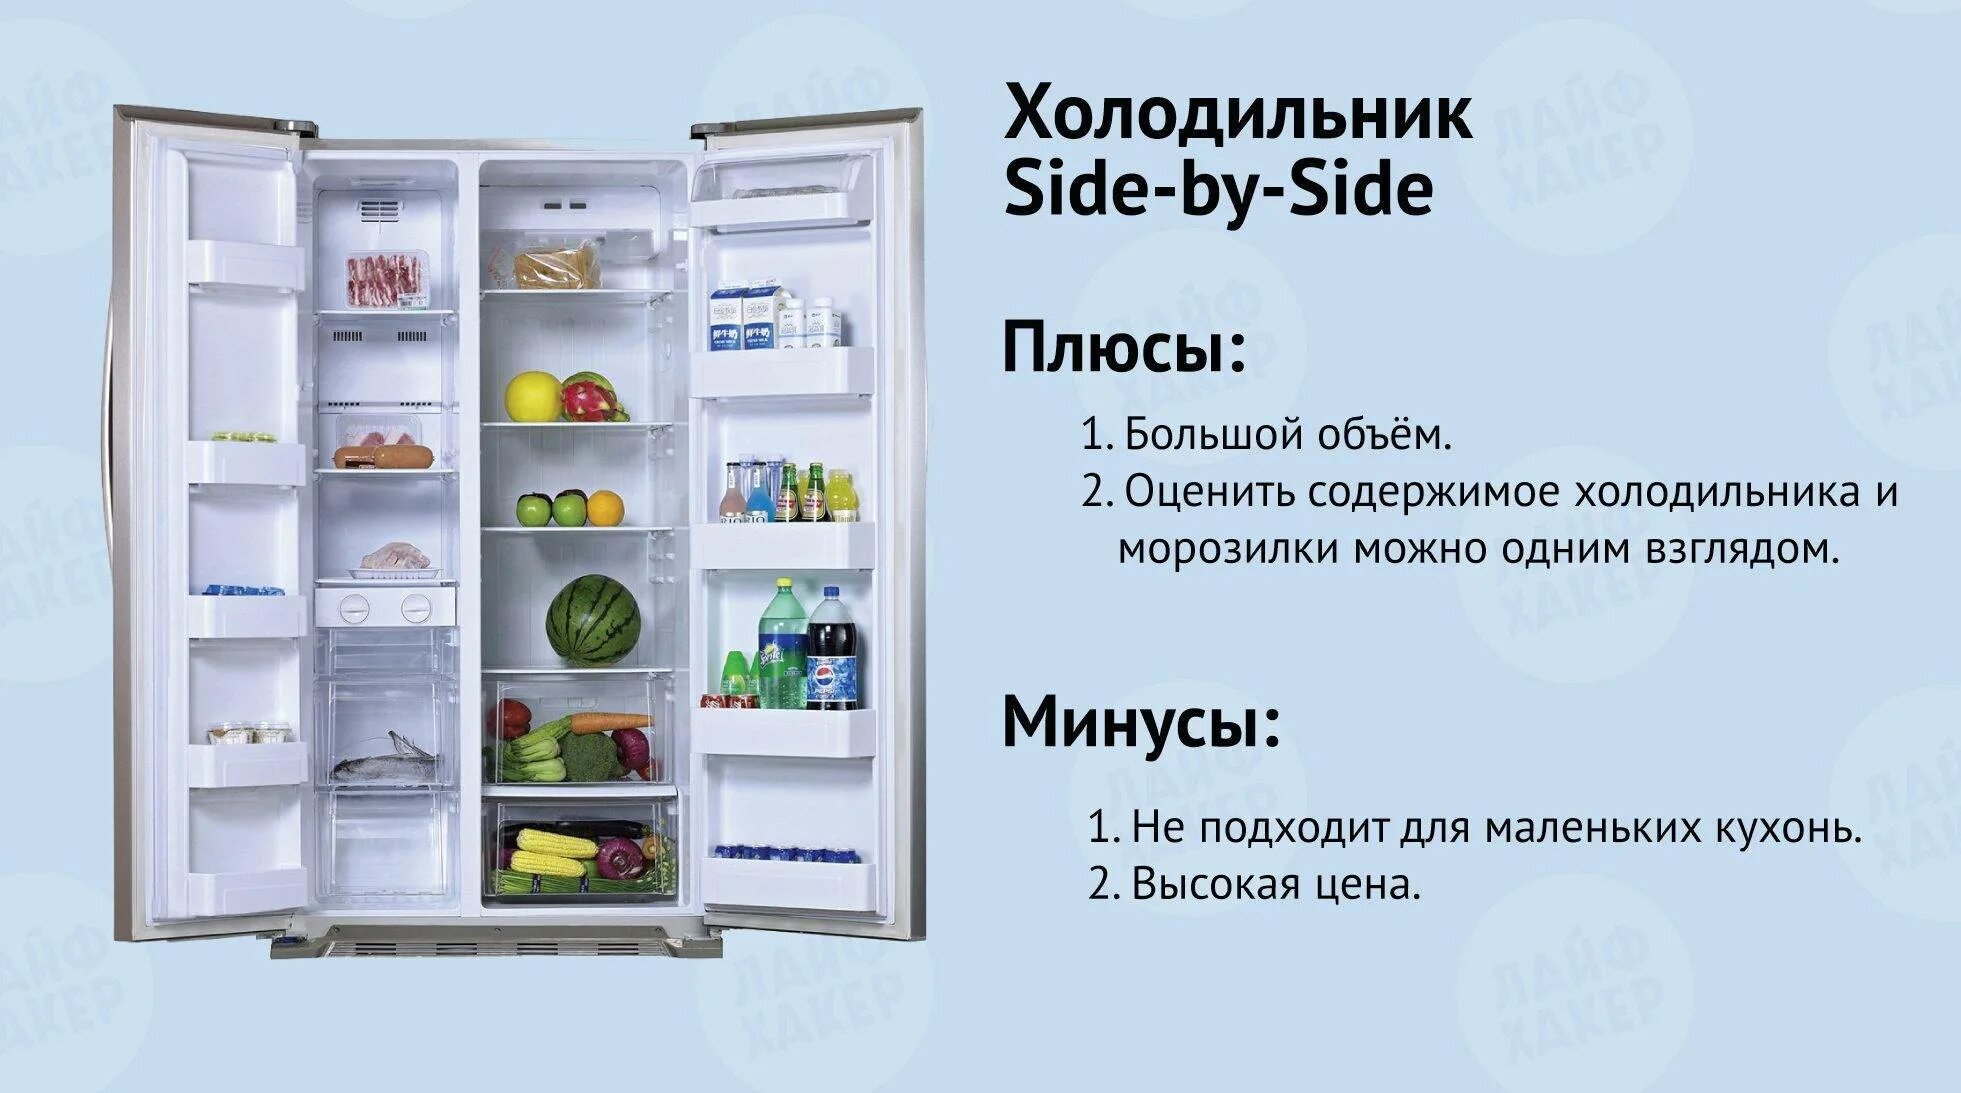 Минусы холодильника. Плюсы и минусы холодильника. Плюсы холодильника. Температура в холодильнике. Изменение температуры в холодильнике